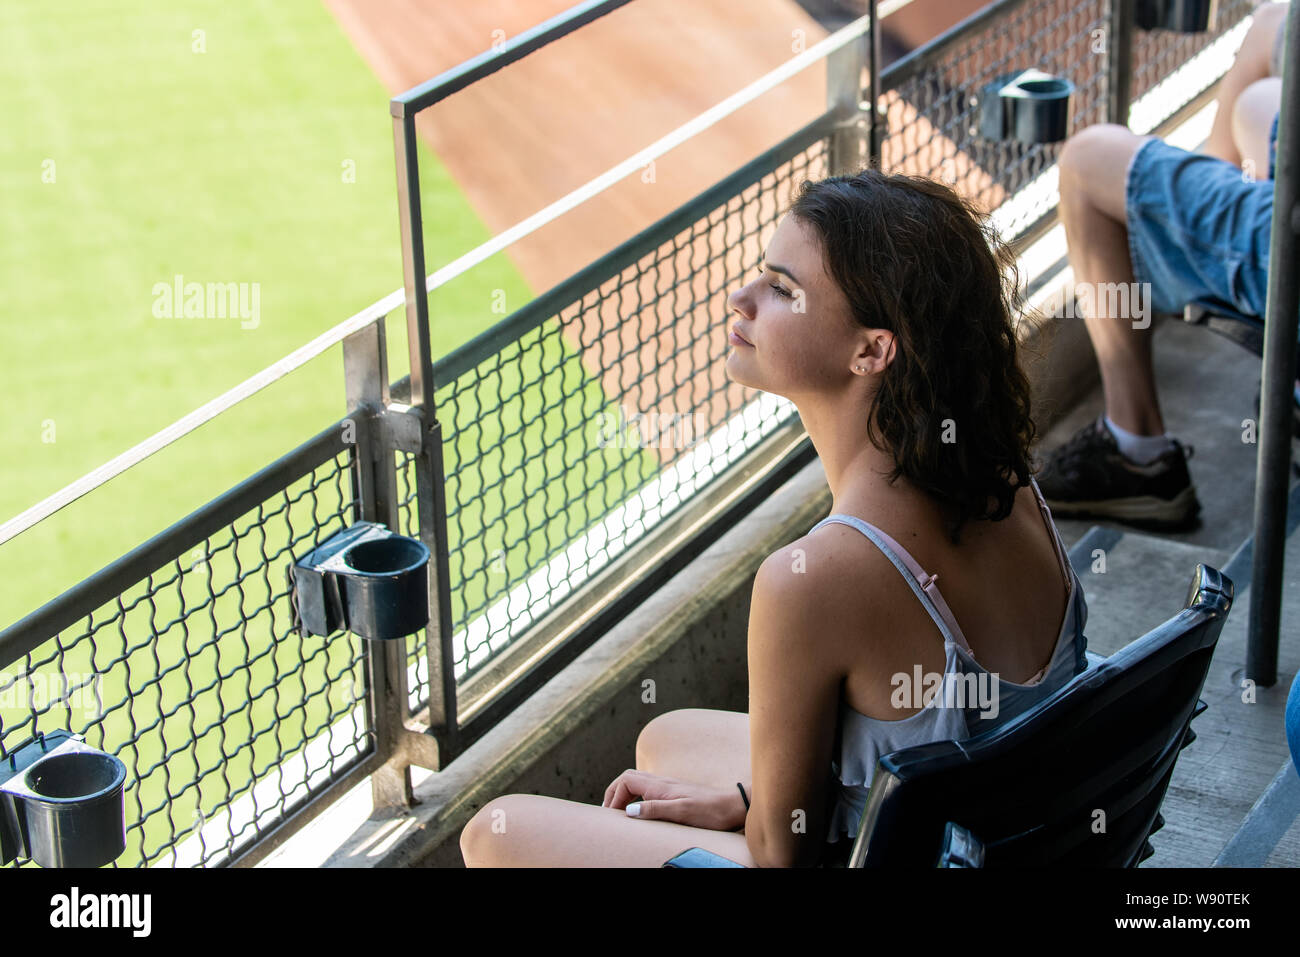 Adolescente femenino aficionado sentado en primera fila del piso superior para una perfecta visualización en lugar del estadio. Foto de stock